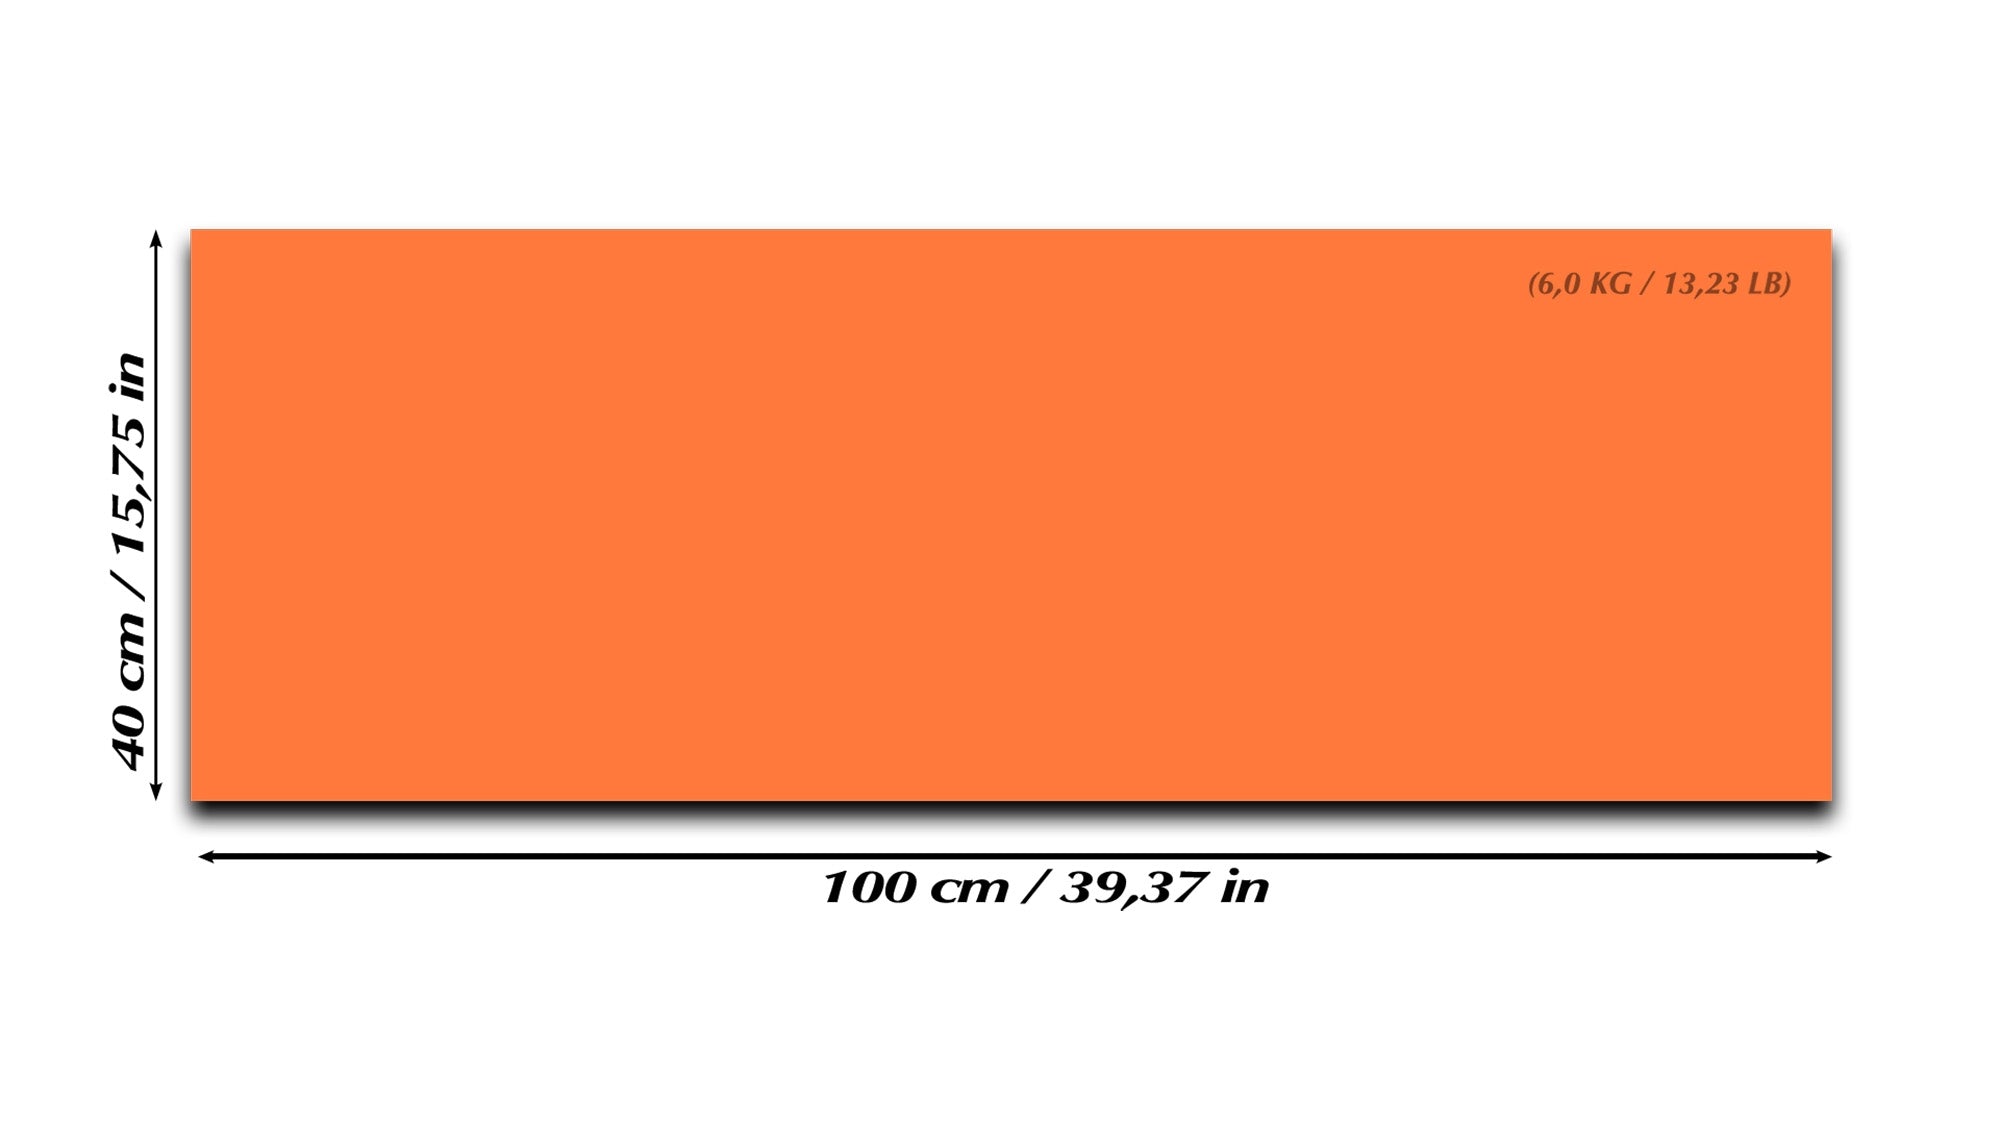 Tableau magnétique effaçable à sec en verre – 6 x 4 pi, blanc H-7181 - Uline